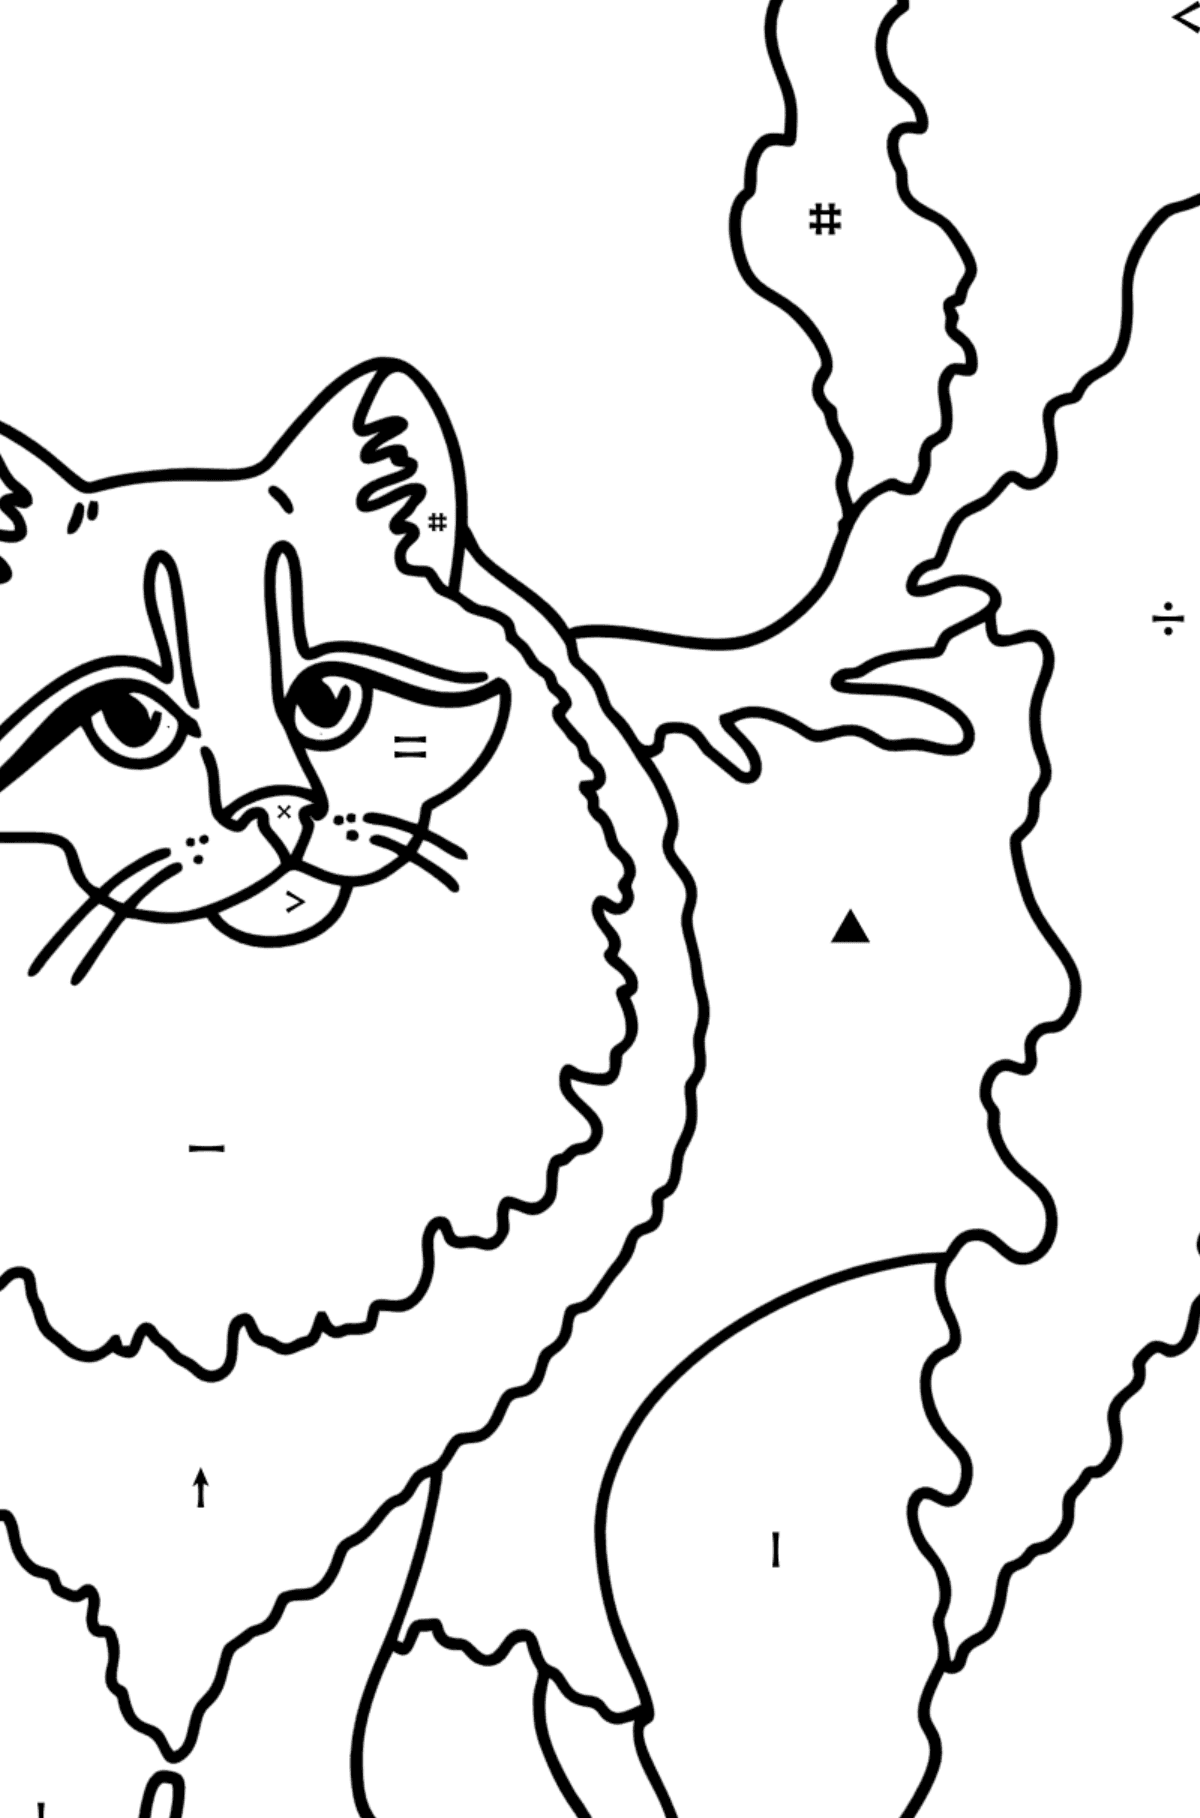 Kolorowanka Kot syberyjski - Kolorowanie według symboli dla dzieci